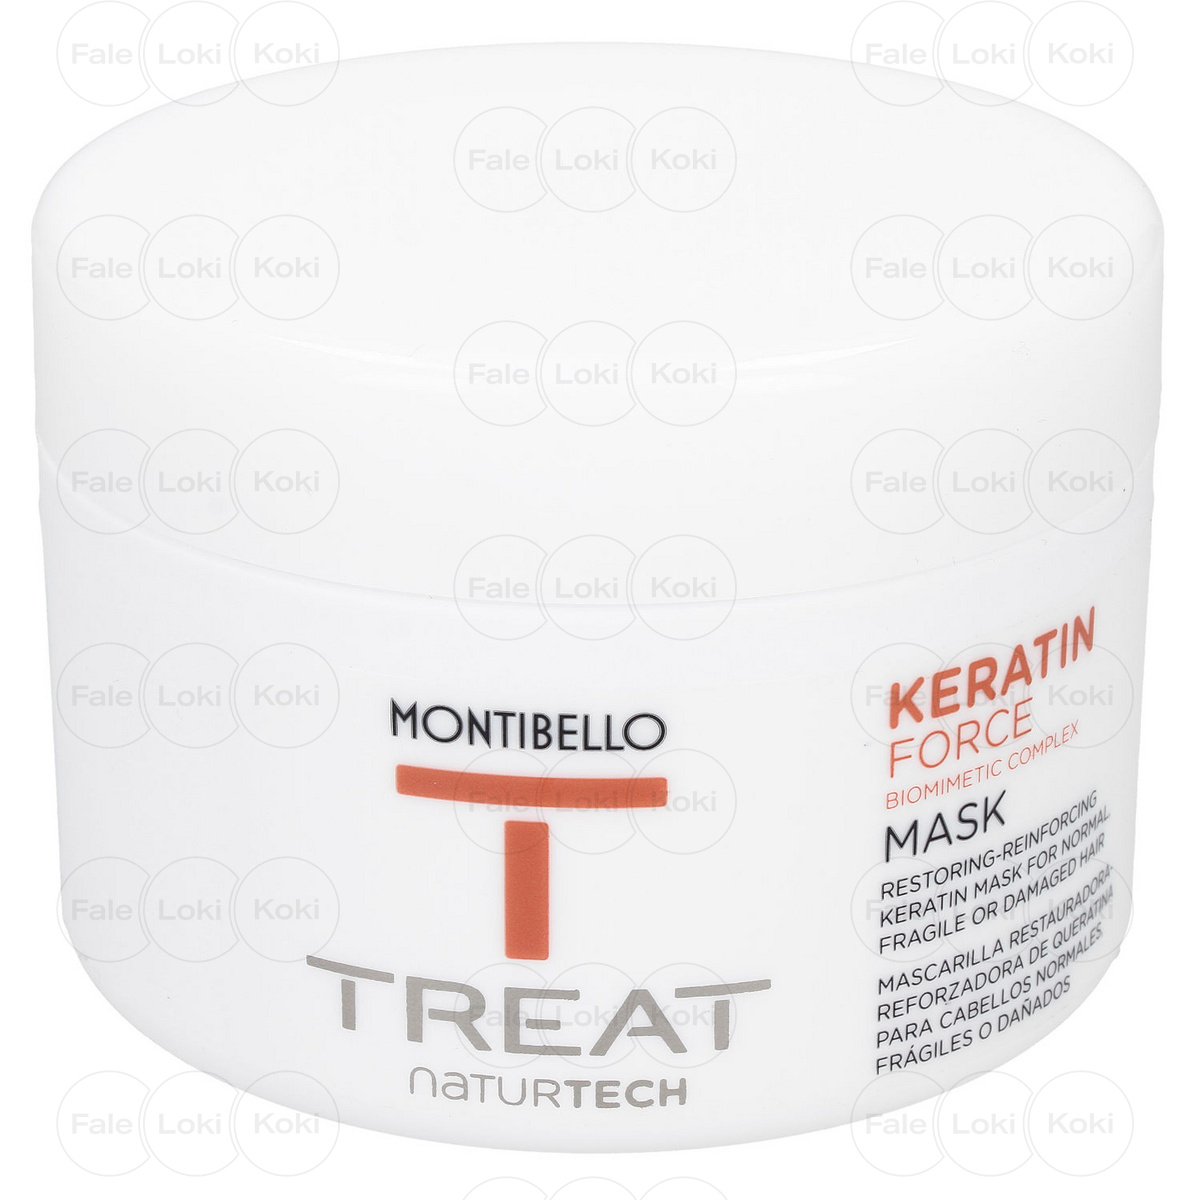 MONTIBELLO TREAT NATURTECH maska do włosów łamliwych Keratin Force 200 ml